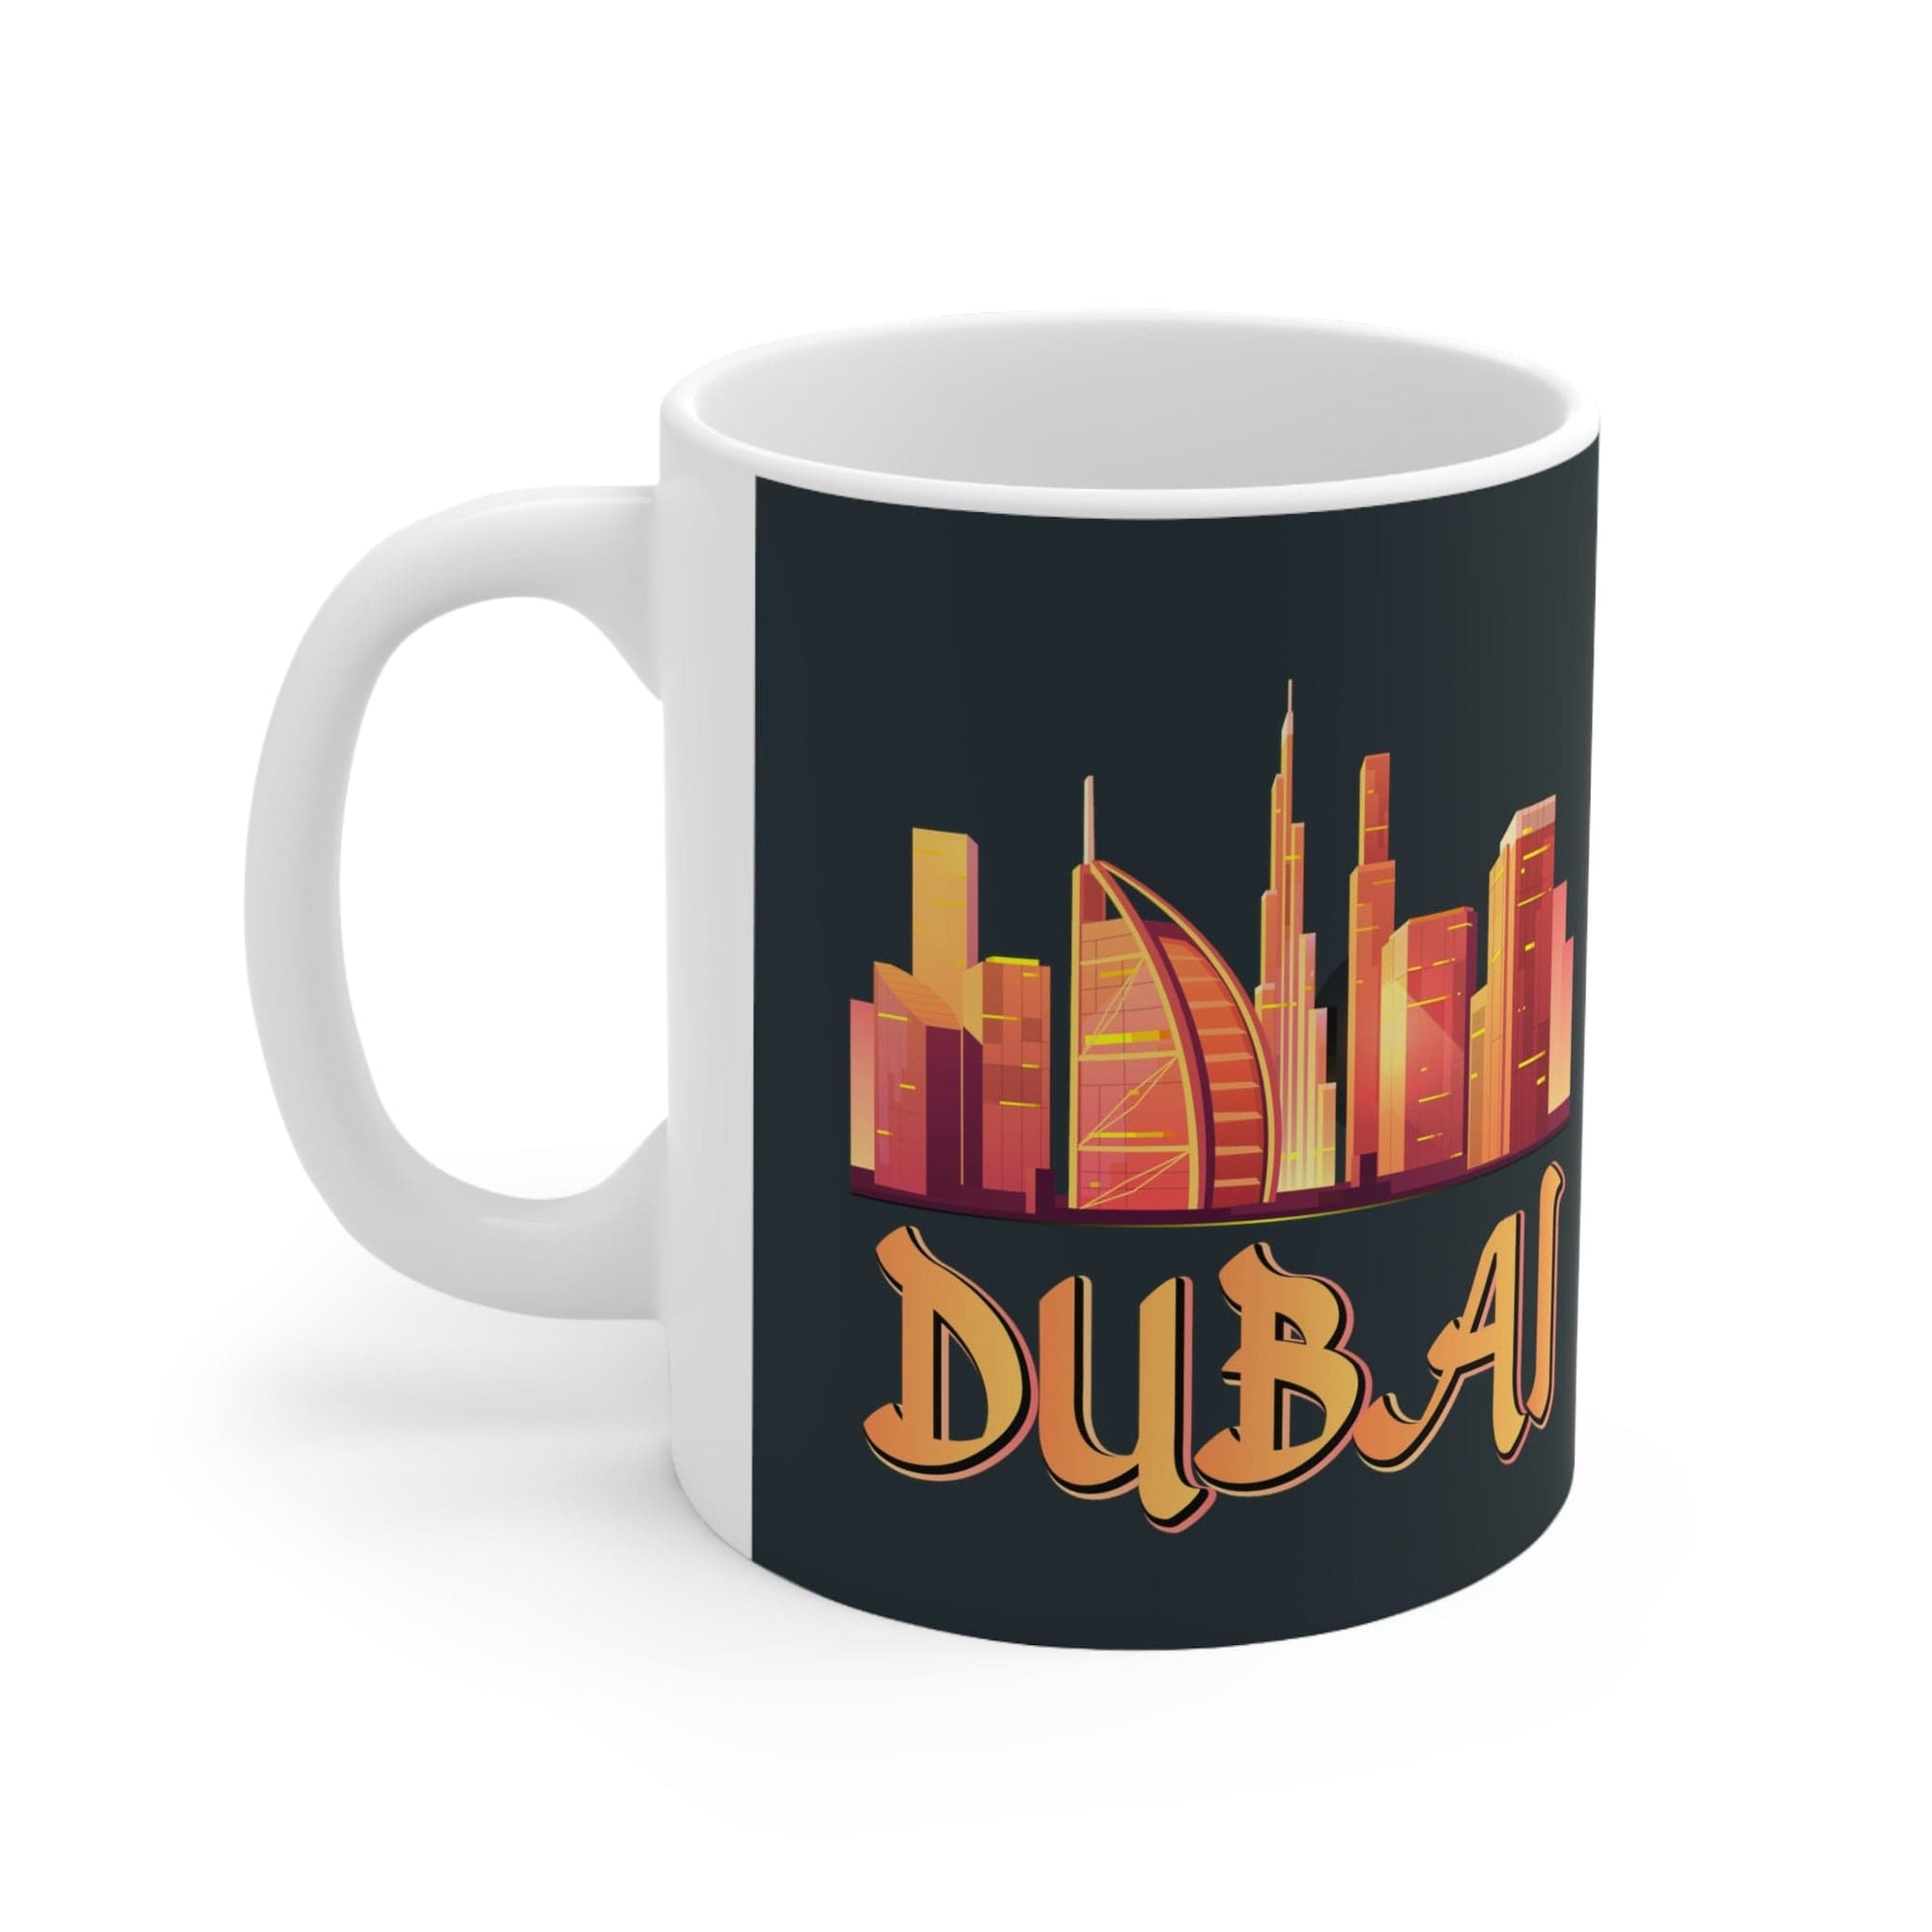 DUBAI - Awesome Ceramic Mug, Exclusive Design